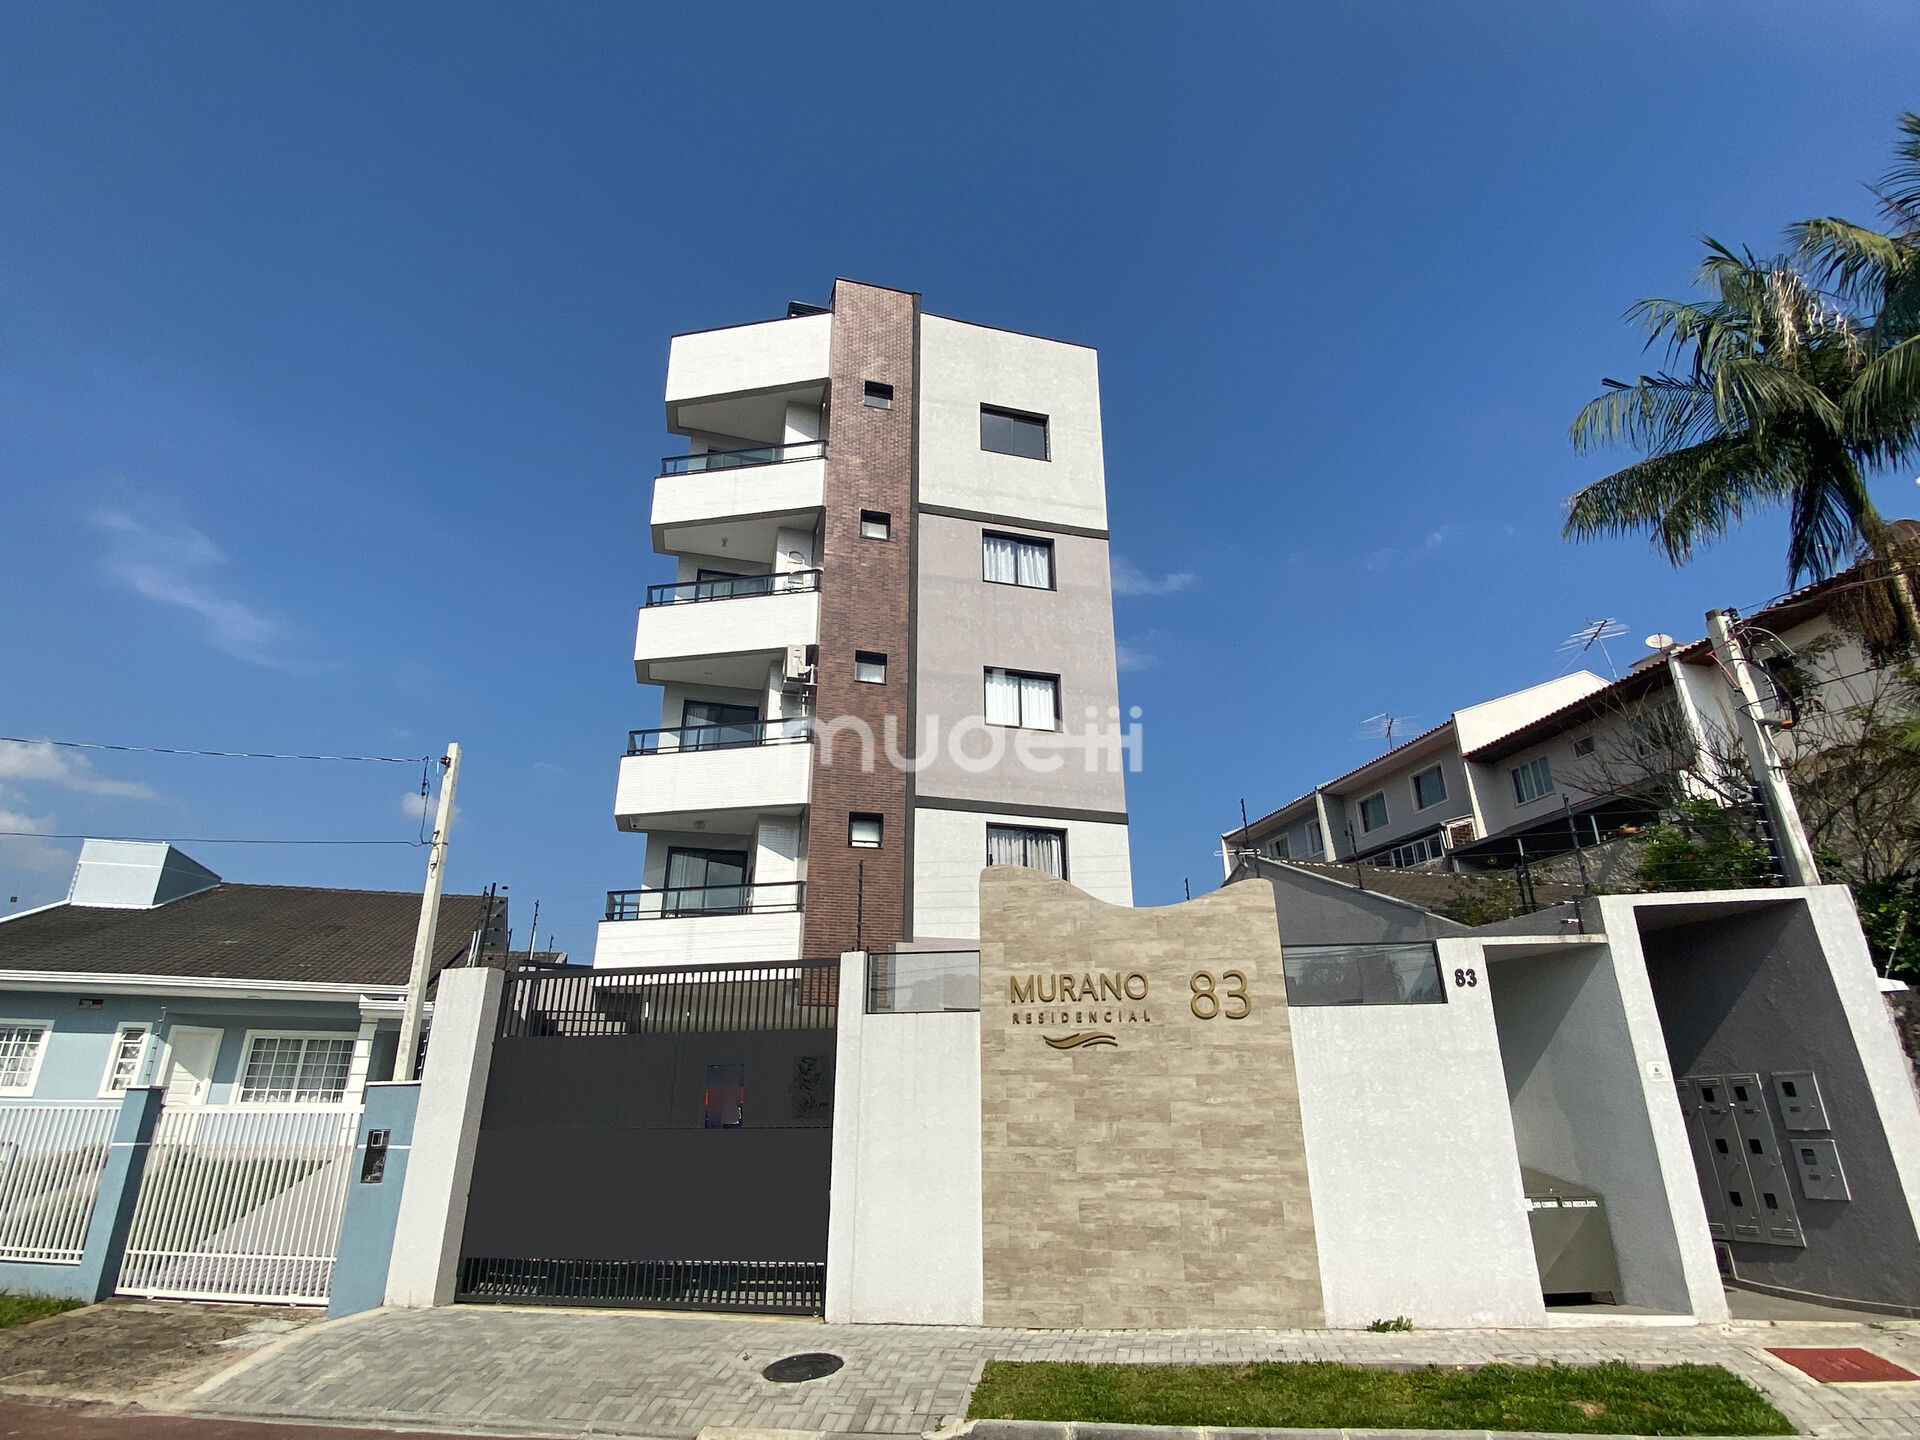 Apartamento à venda no bairro Silveira da Motta - São José dos Pinhais/PR